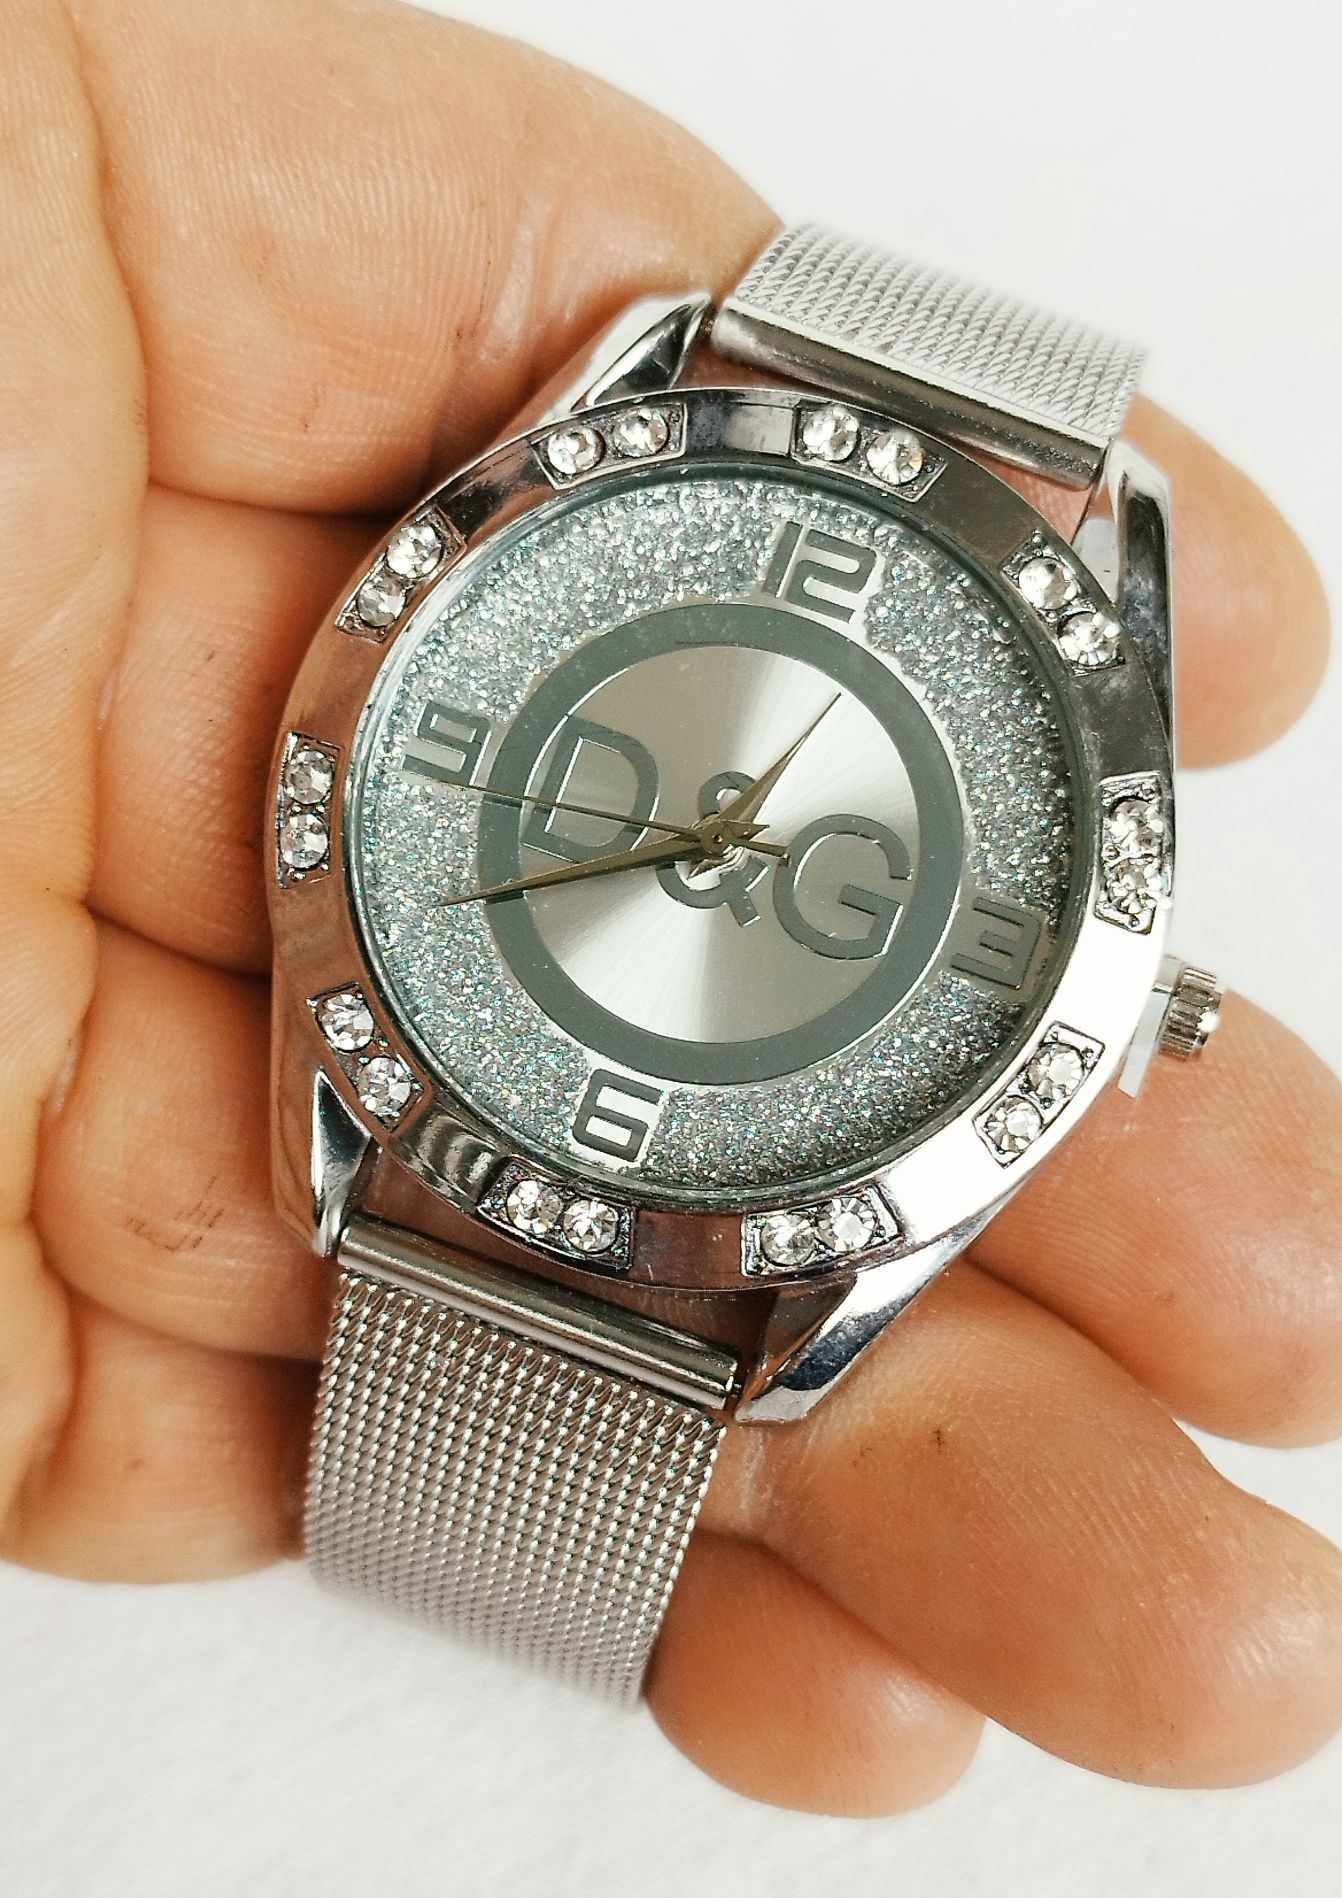 Ceas de dama D&G cu quartz, carcasa si curea din otel inoxidabil.